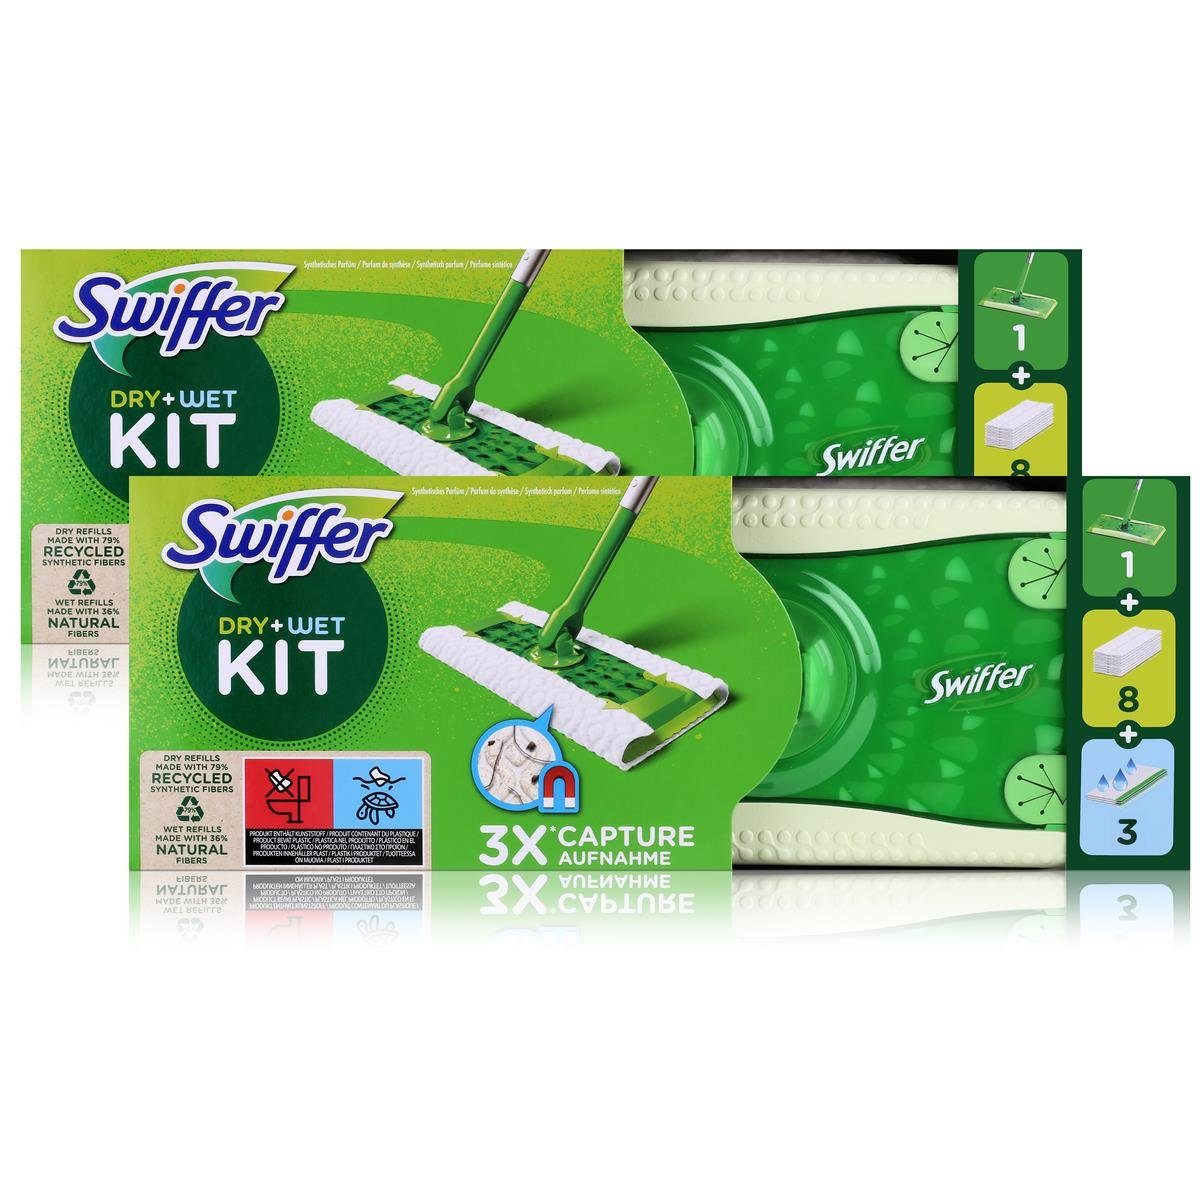 Staubmagnet Bodentücher (2er und Fussbodenreiniger Swiffer Swiffer Pack Kit Bodenwischer Dry+Wet